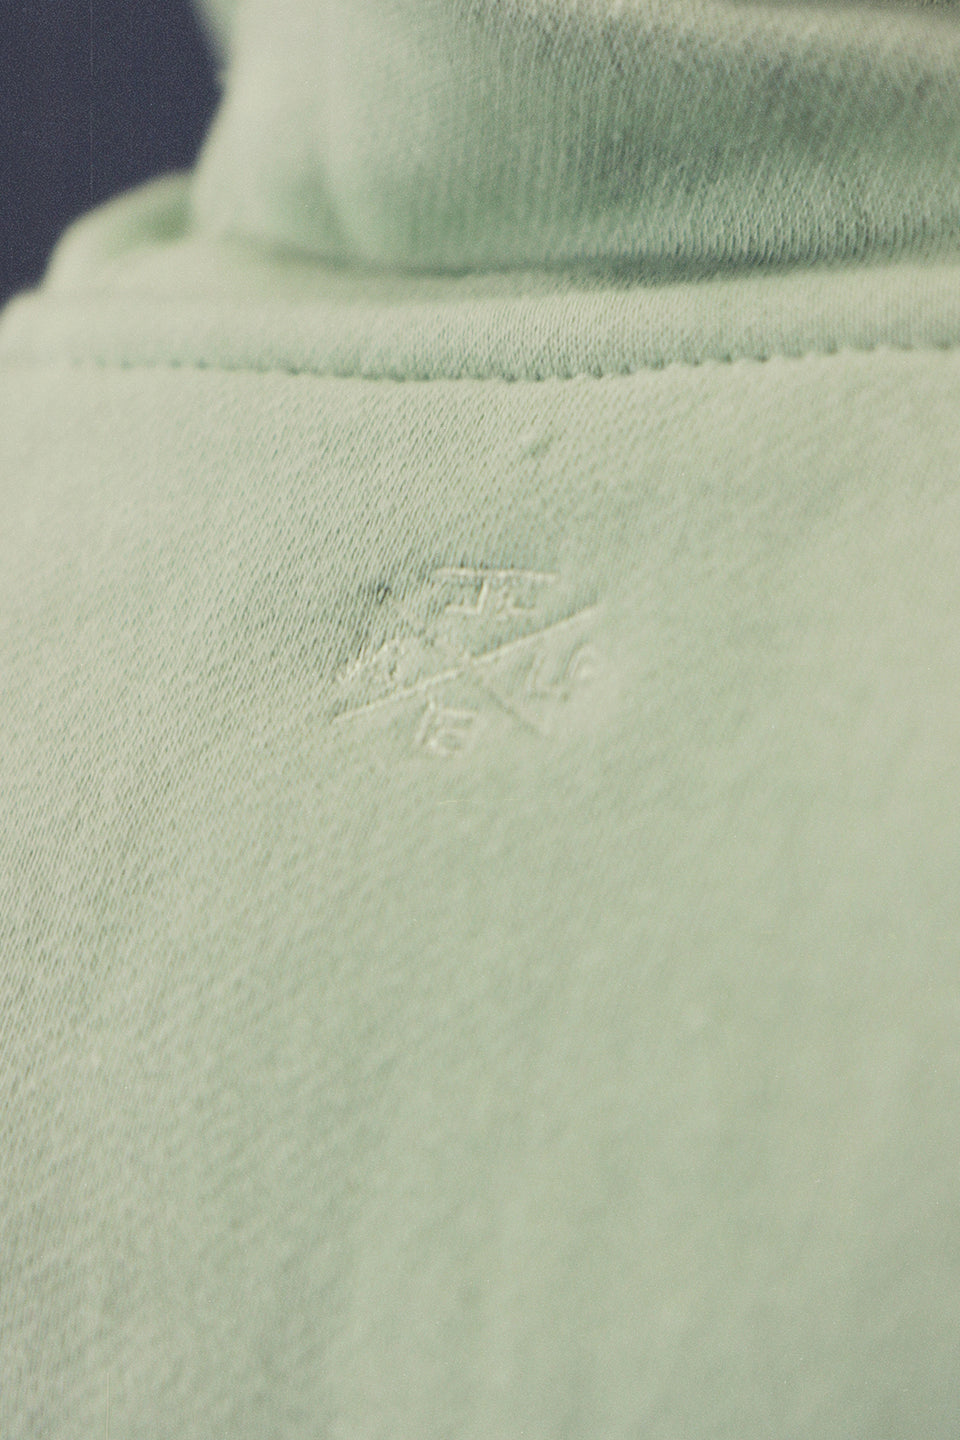 logo shot on the Men's Sage Fleece Zip Up Hoodie Sweatshirt Jogger Top To Match Sneakers